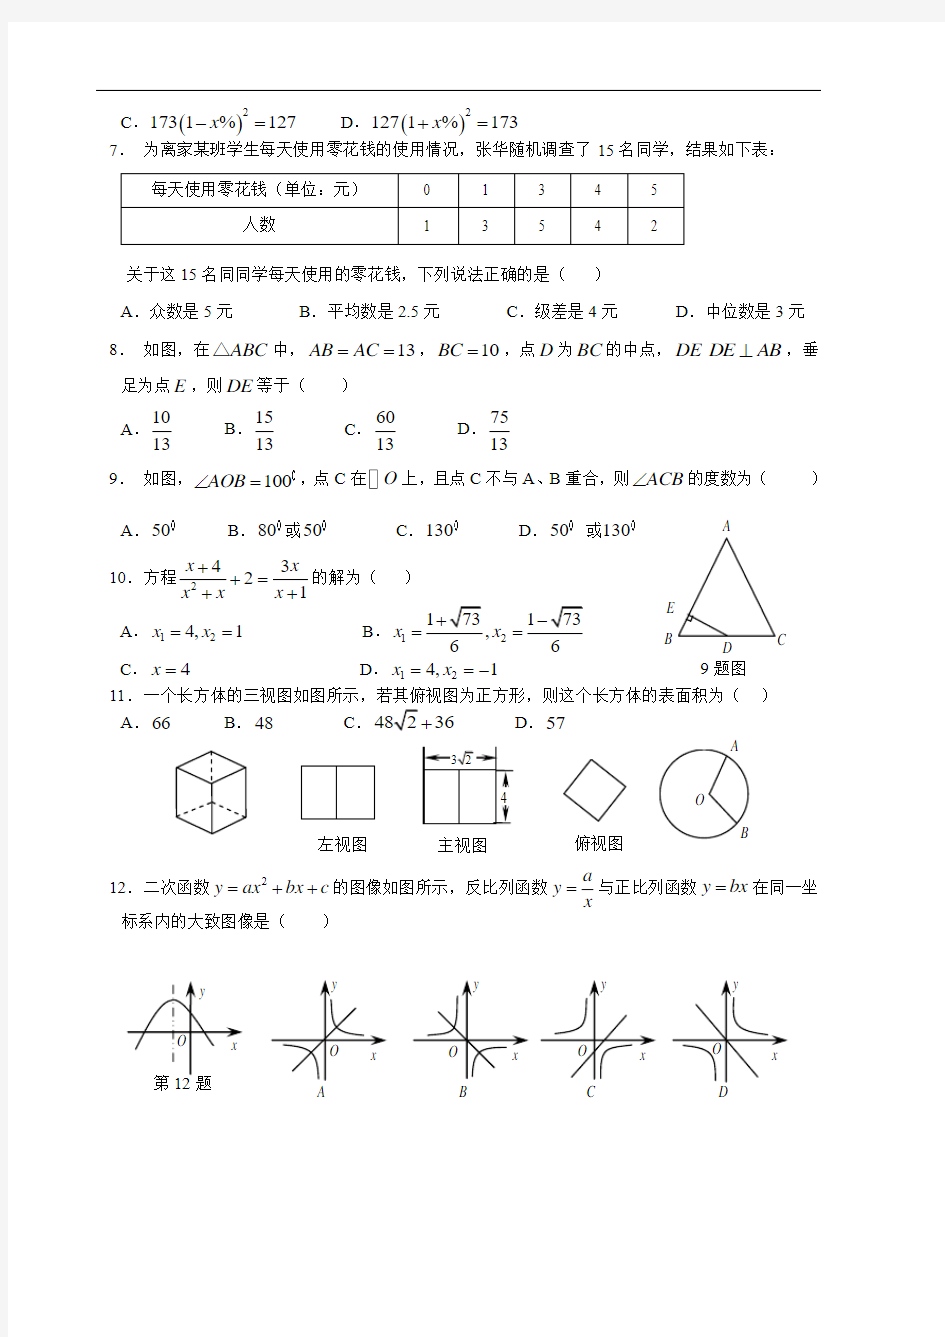 2017年北京中考数学试卷参考答案与评分标准